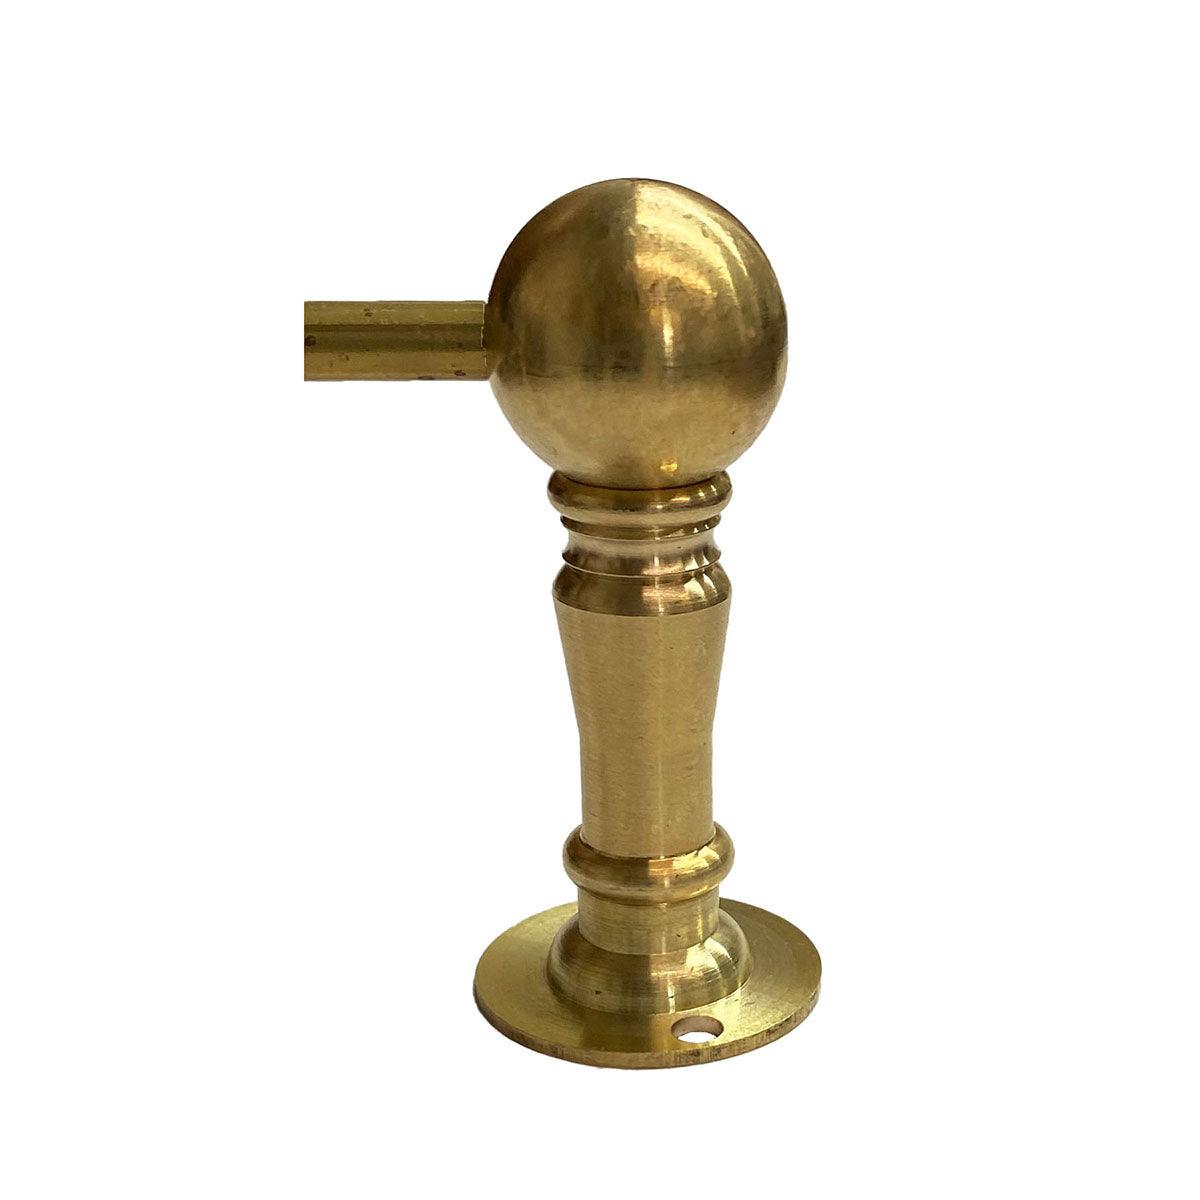 Antique Brass Cabinet Knobs, 1 inch - Paxton Hardware